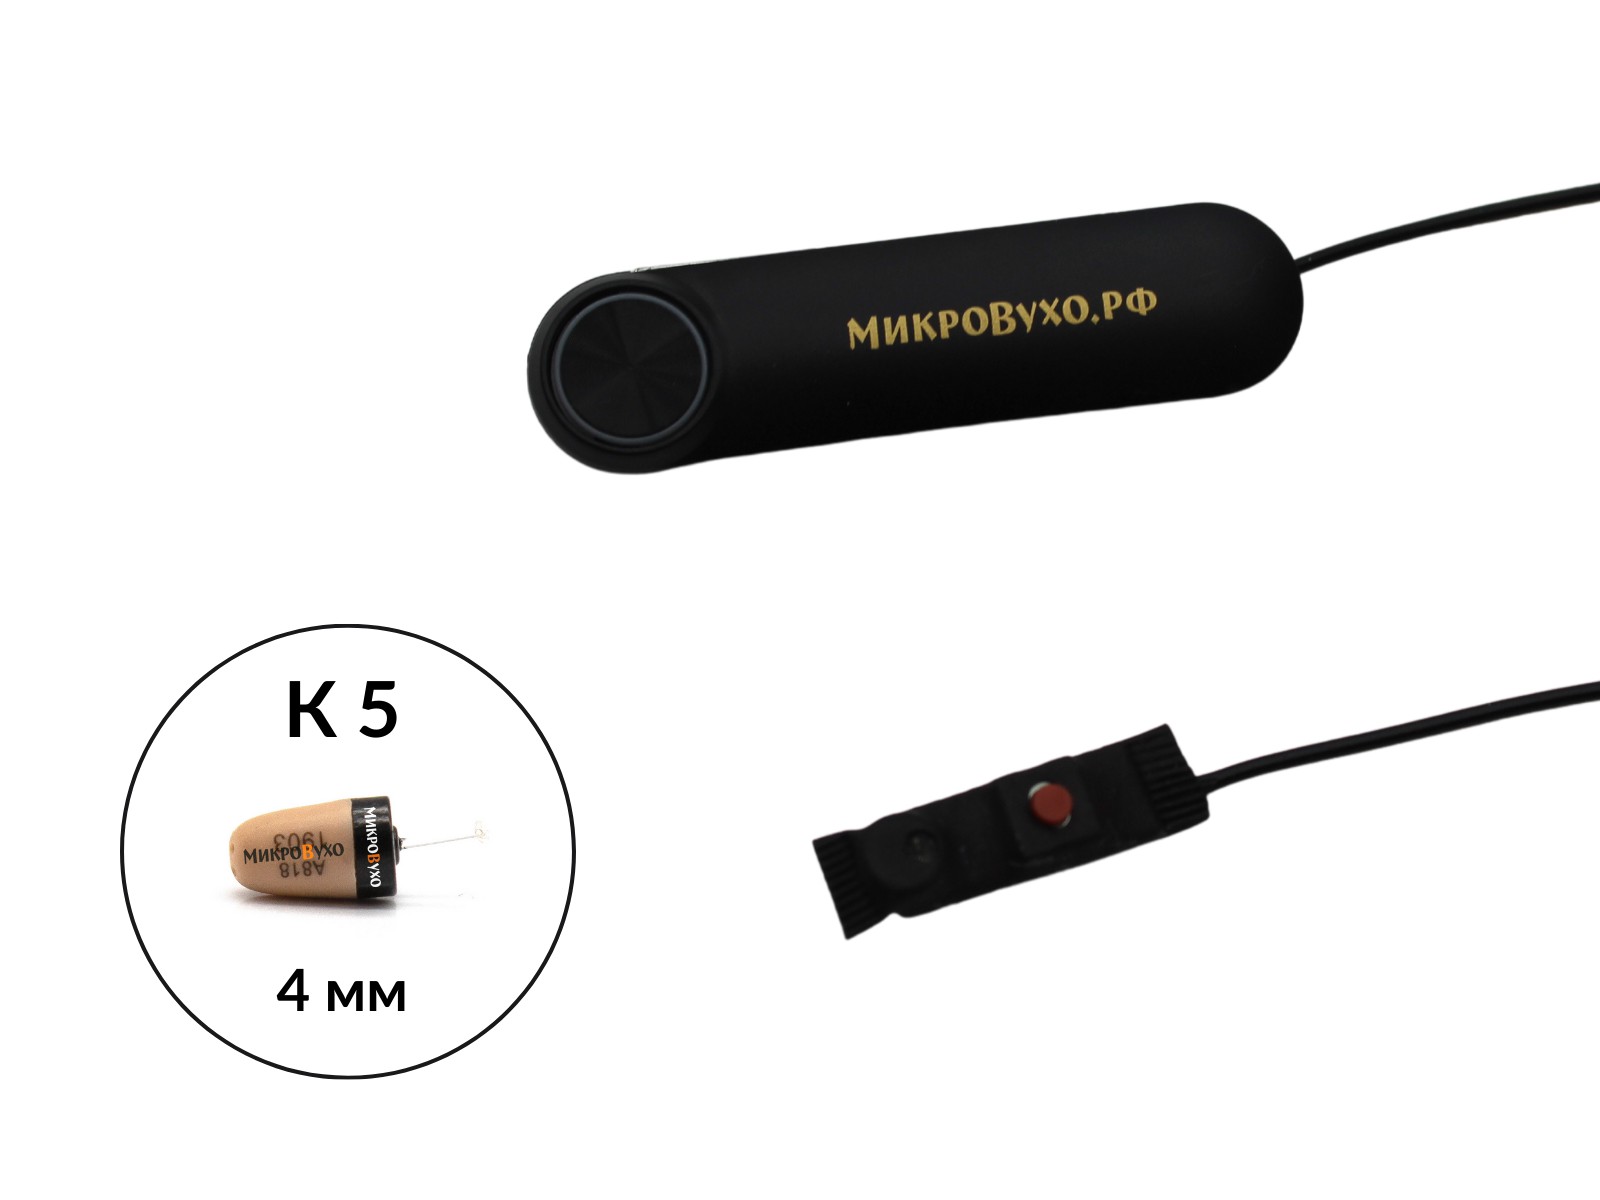 Аренда микронаушника Bluetooth Box Standard с капсульным микронаушником К5 4 мм